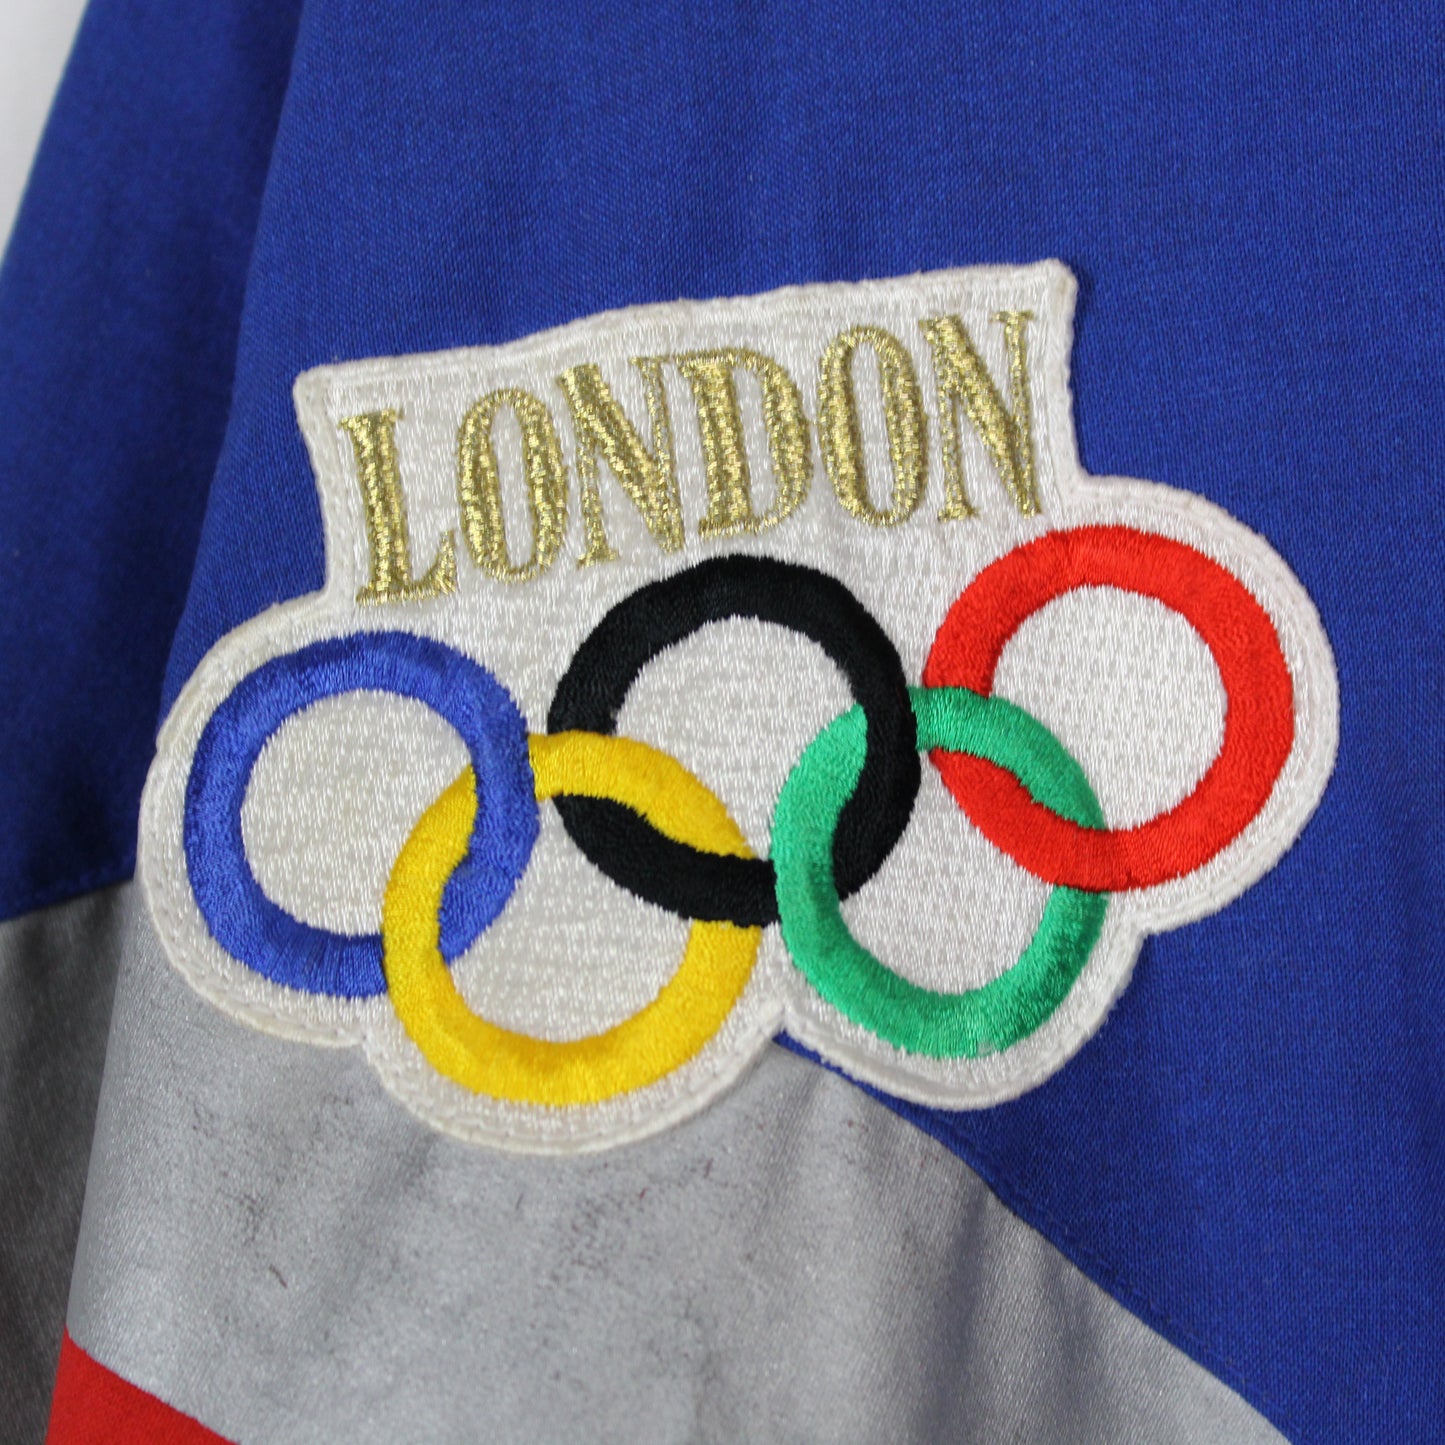 Vintage 80s Adidas London Olympics Sweatshirt - L